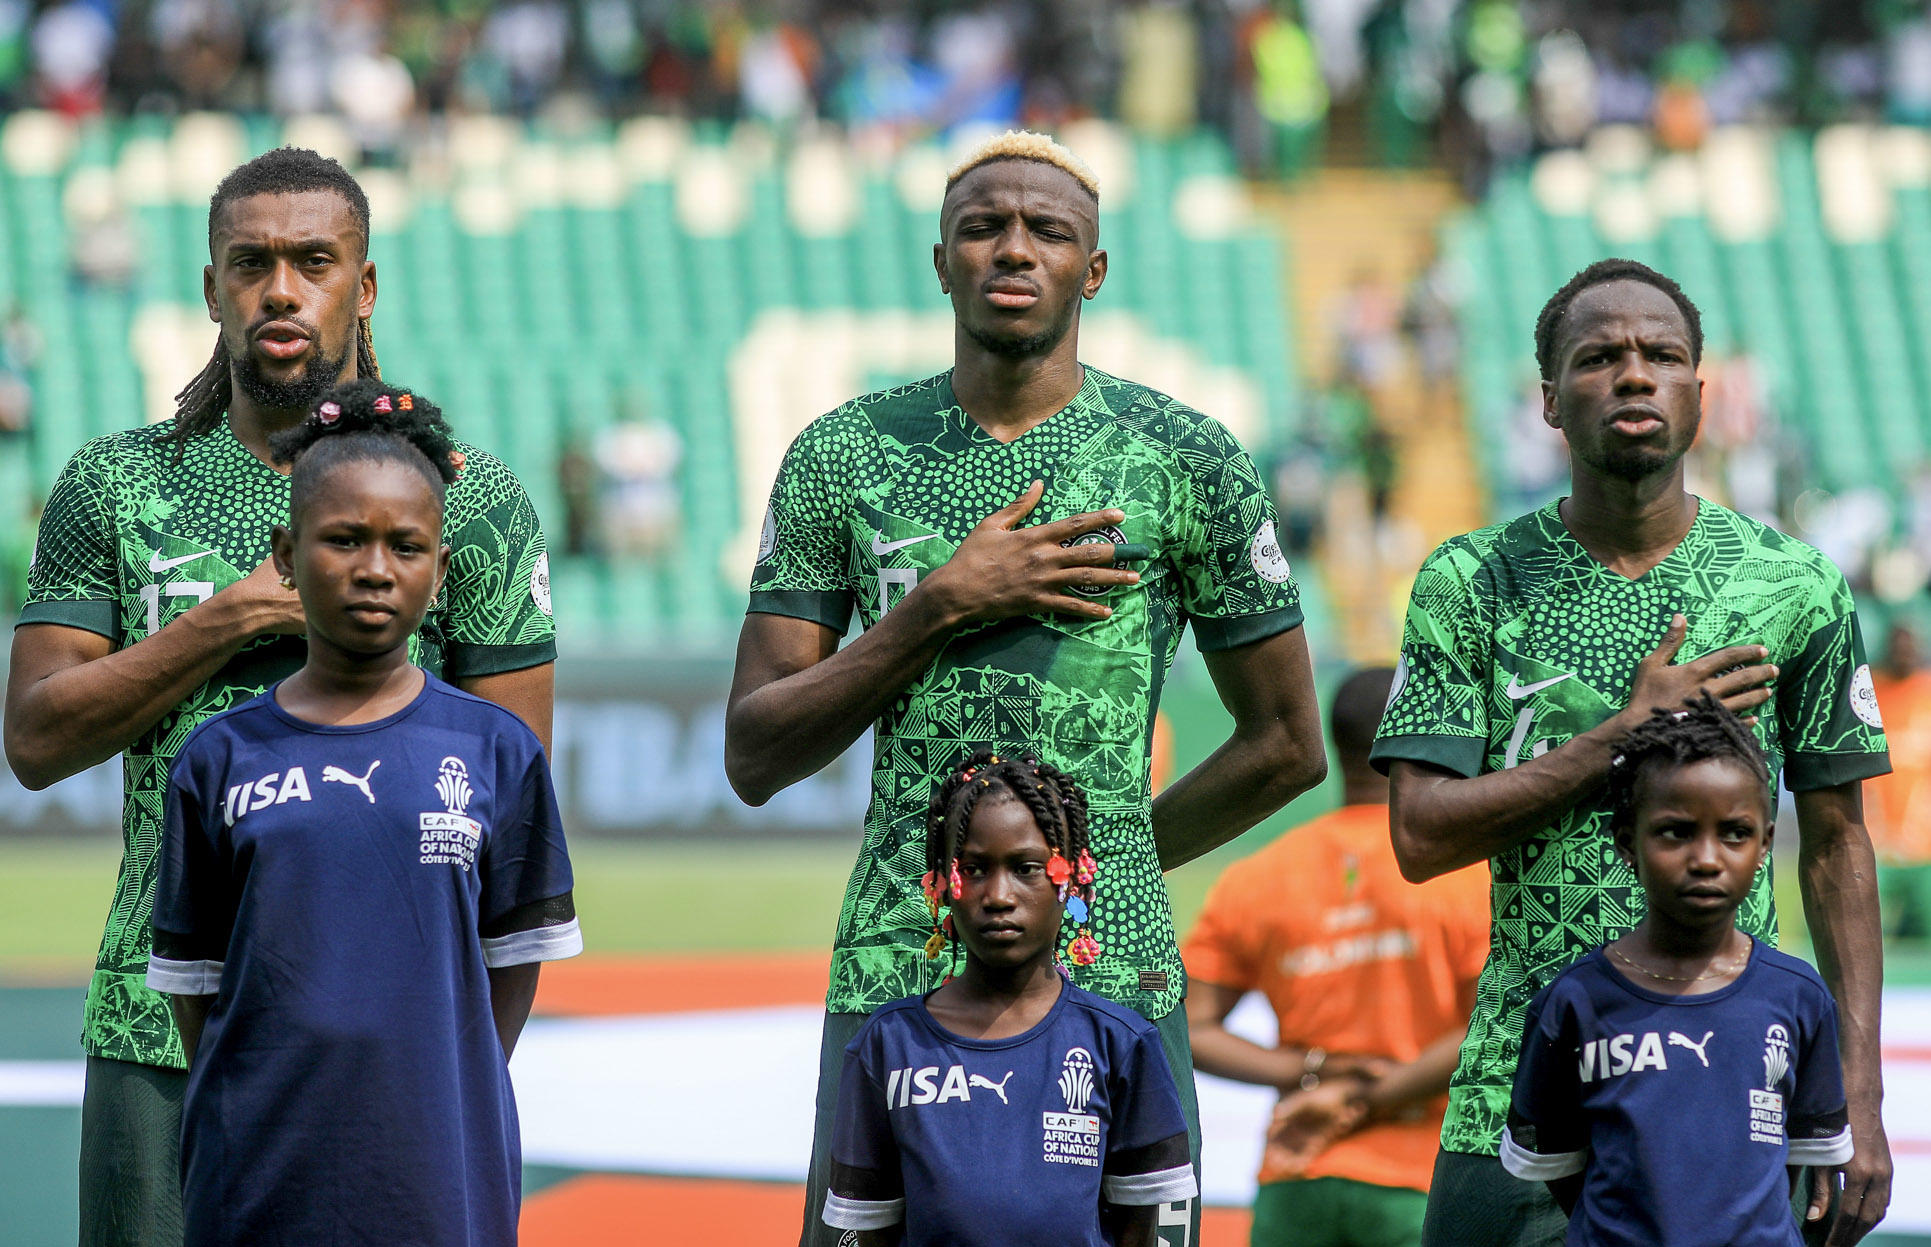 Chahuté face à l'Angola en quarts, Victor Osimhen sera-t-il remis pour aider ses partenaires lors de la demi-finale de CAN du Nigeria face à l'Afrique du sud, mercredi ? Photo Icon Sport